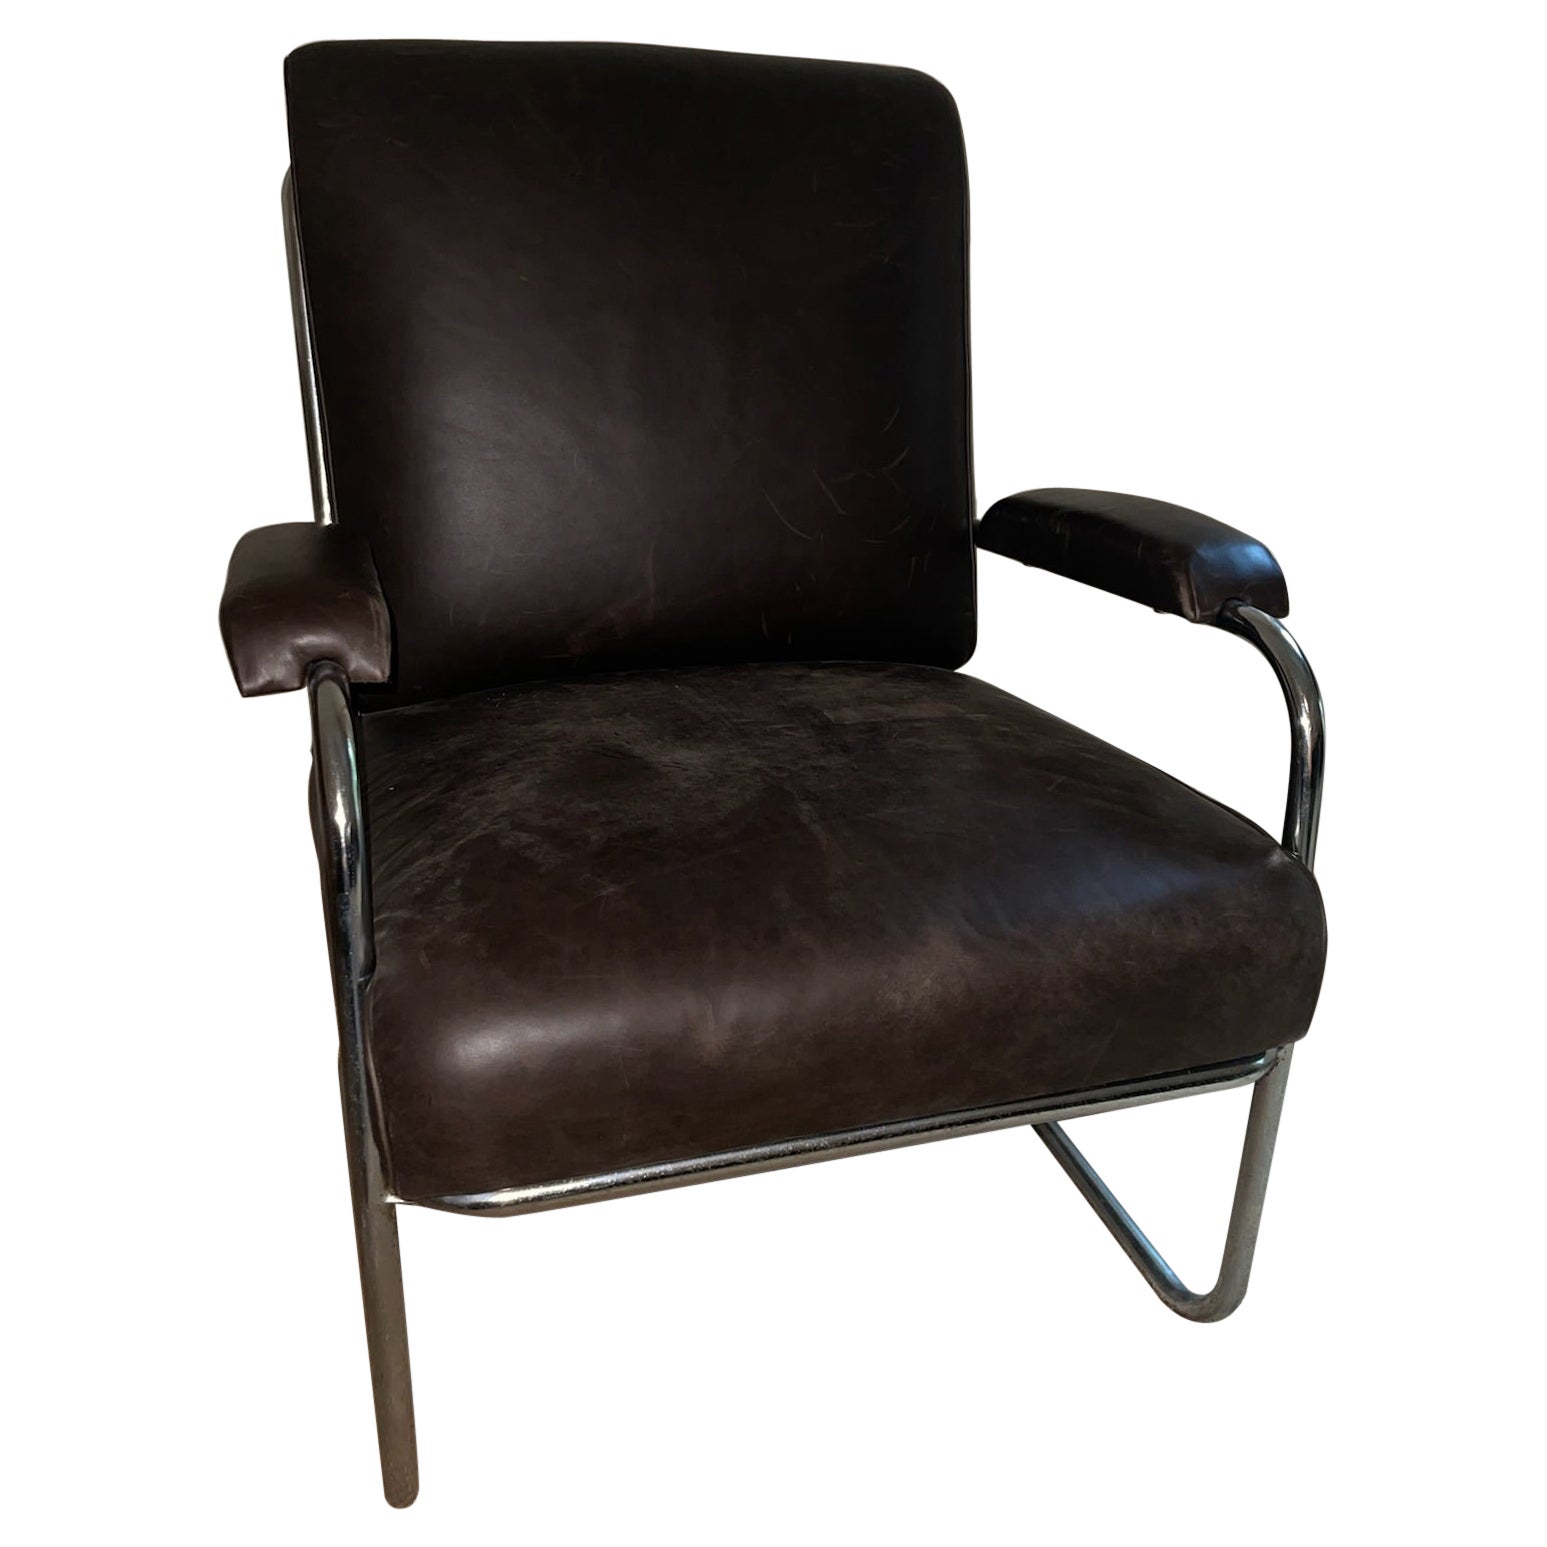 Vieille chaise tubulaire anglaise en cuir marron du début du 20ème siècle